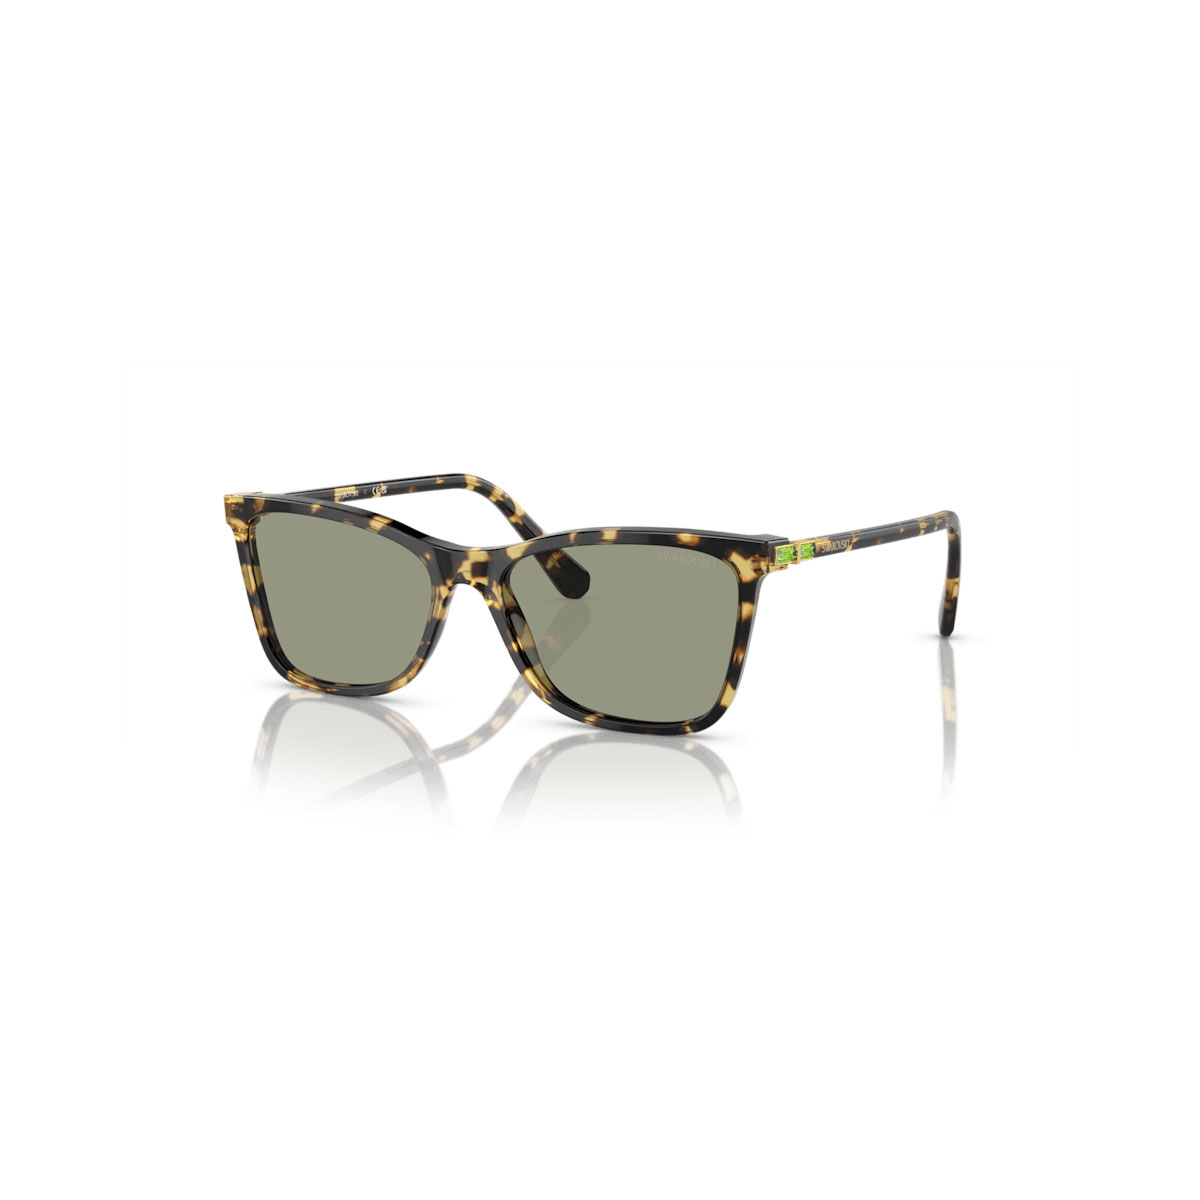 Swarovski Sunglasses, Square shape, Brown